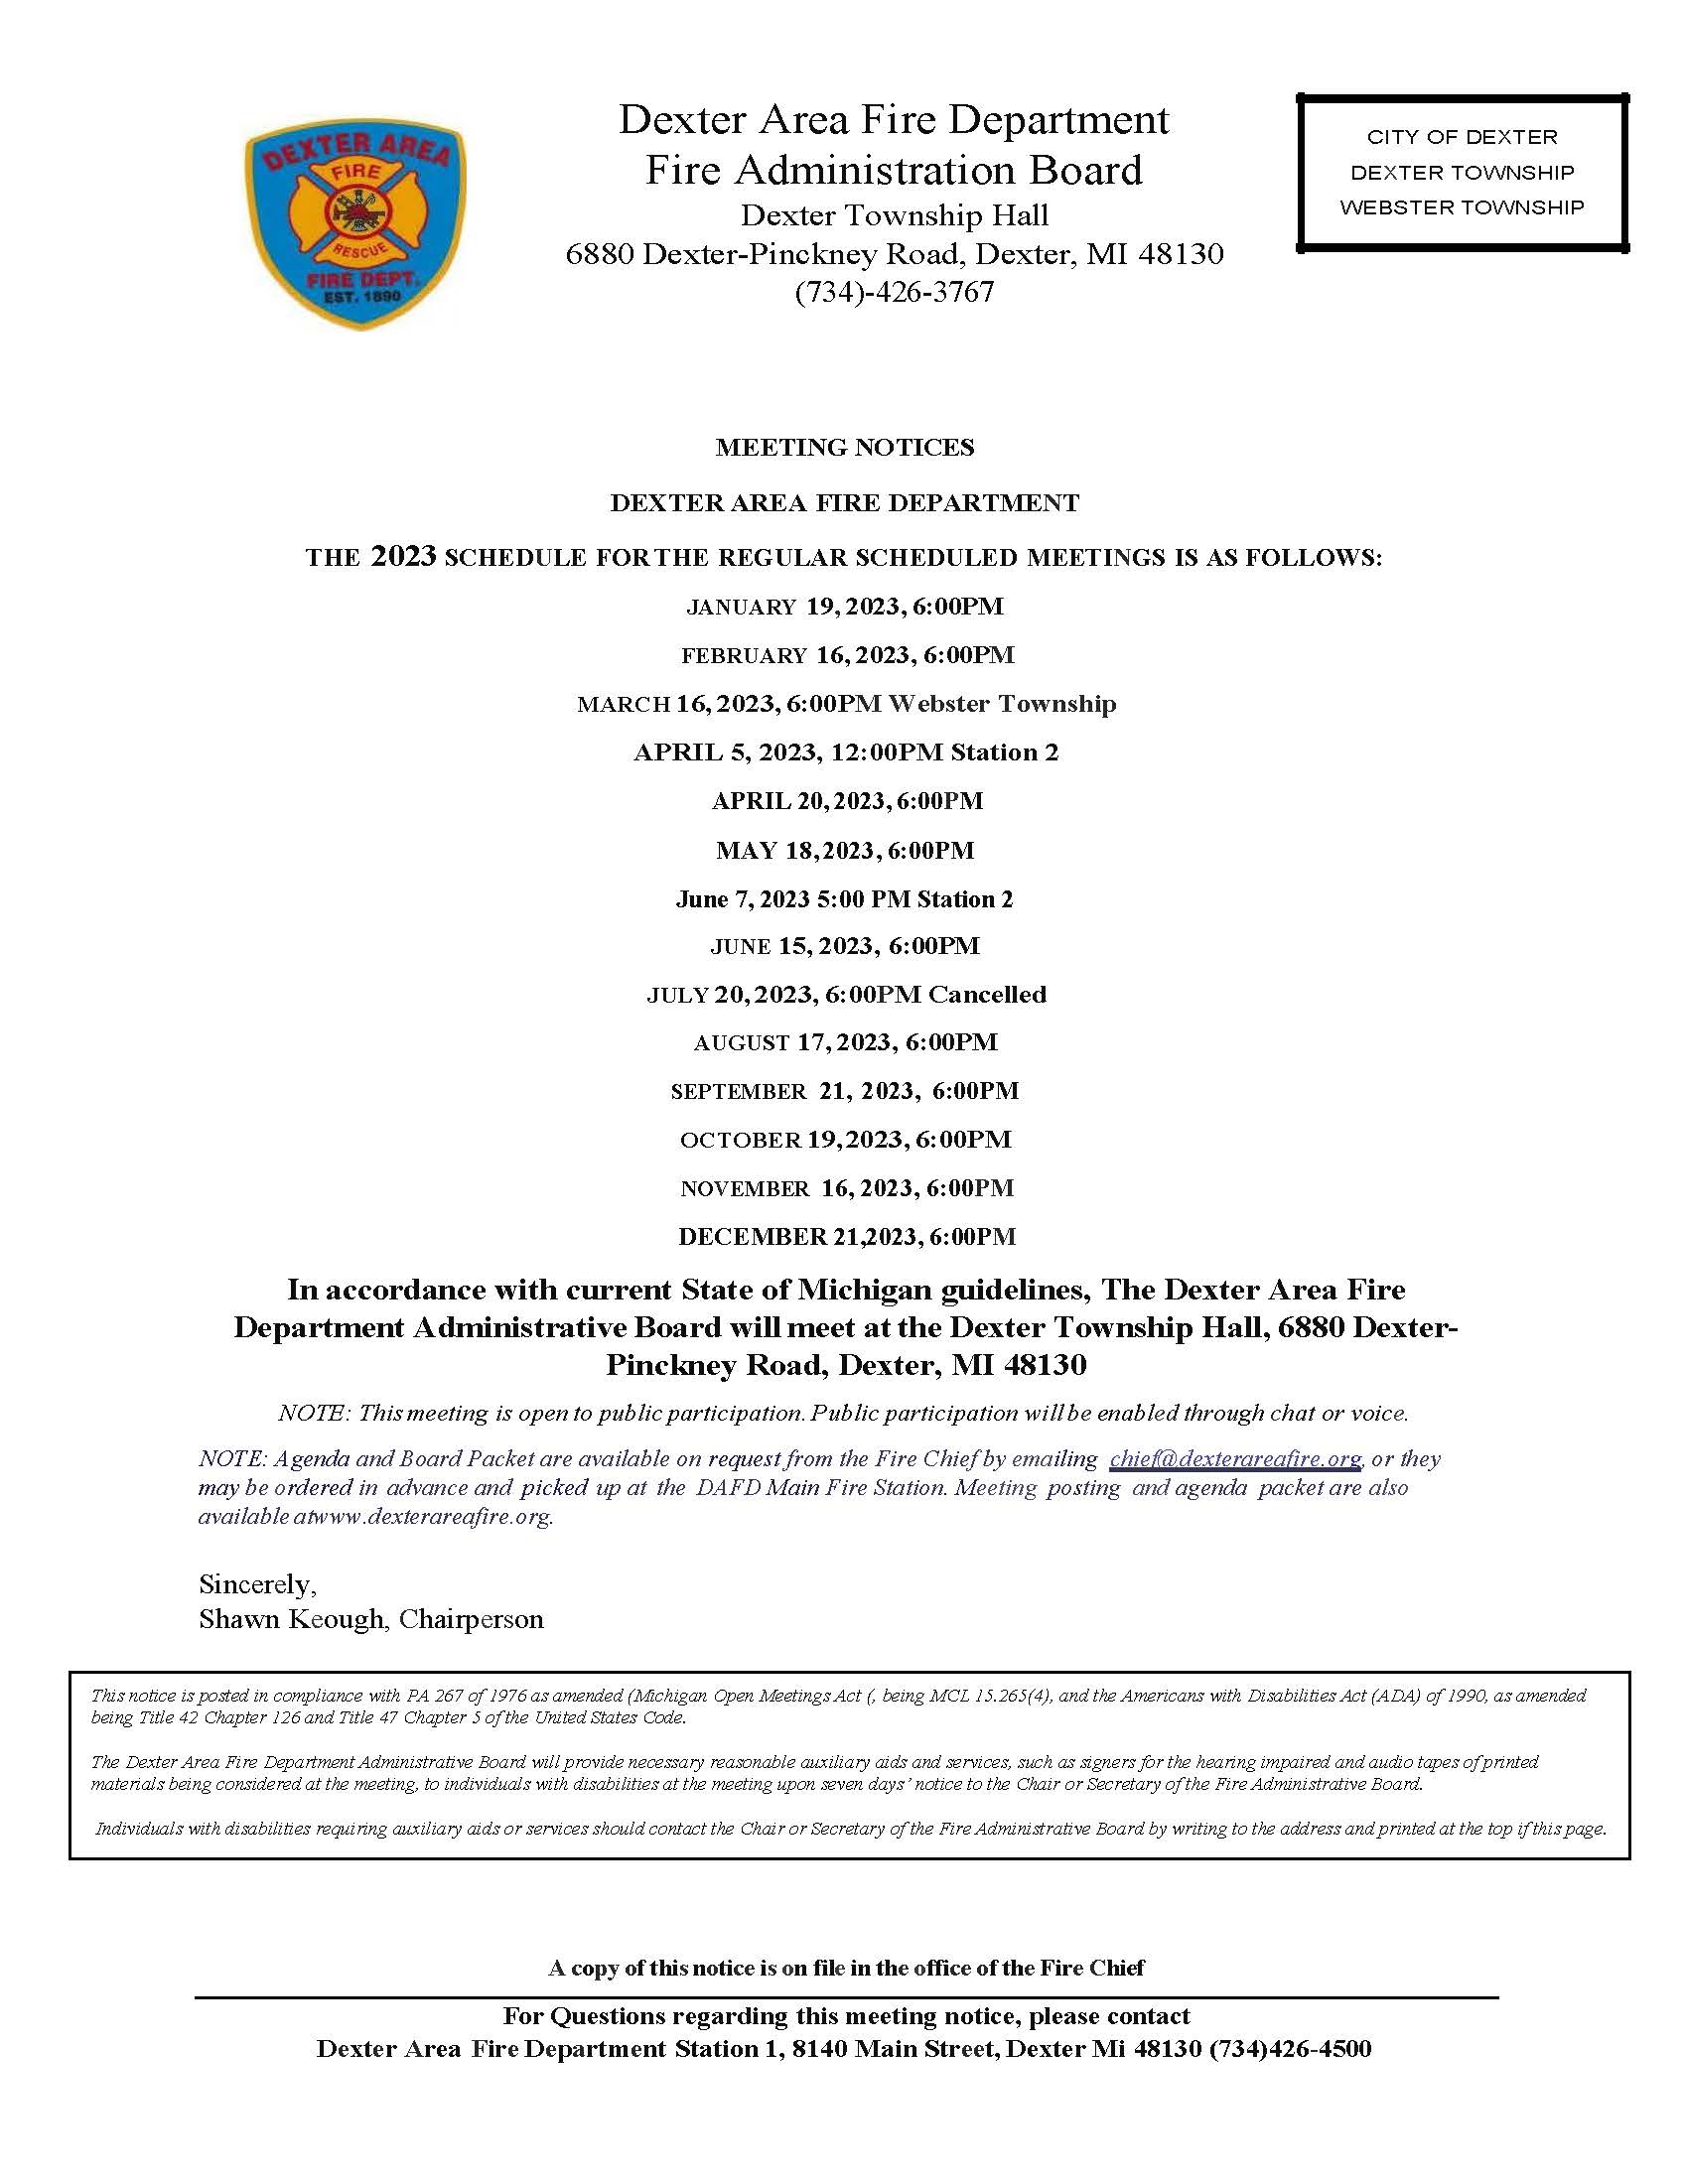 DAFD Meeting Notice Schedule 2023